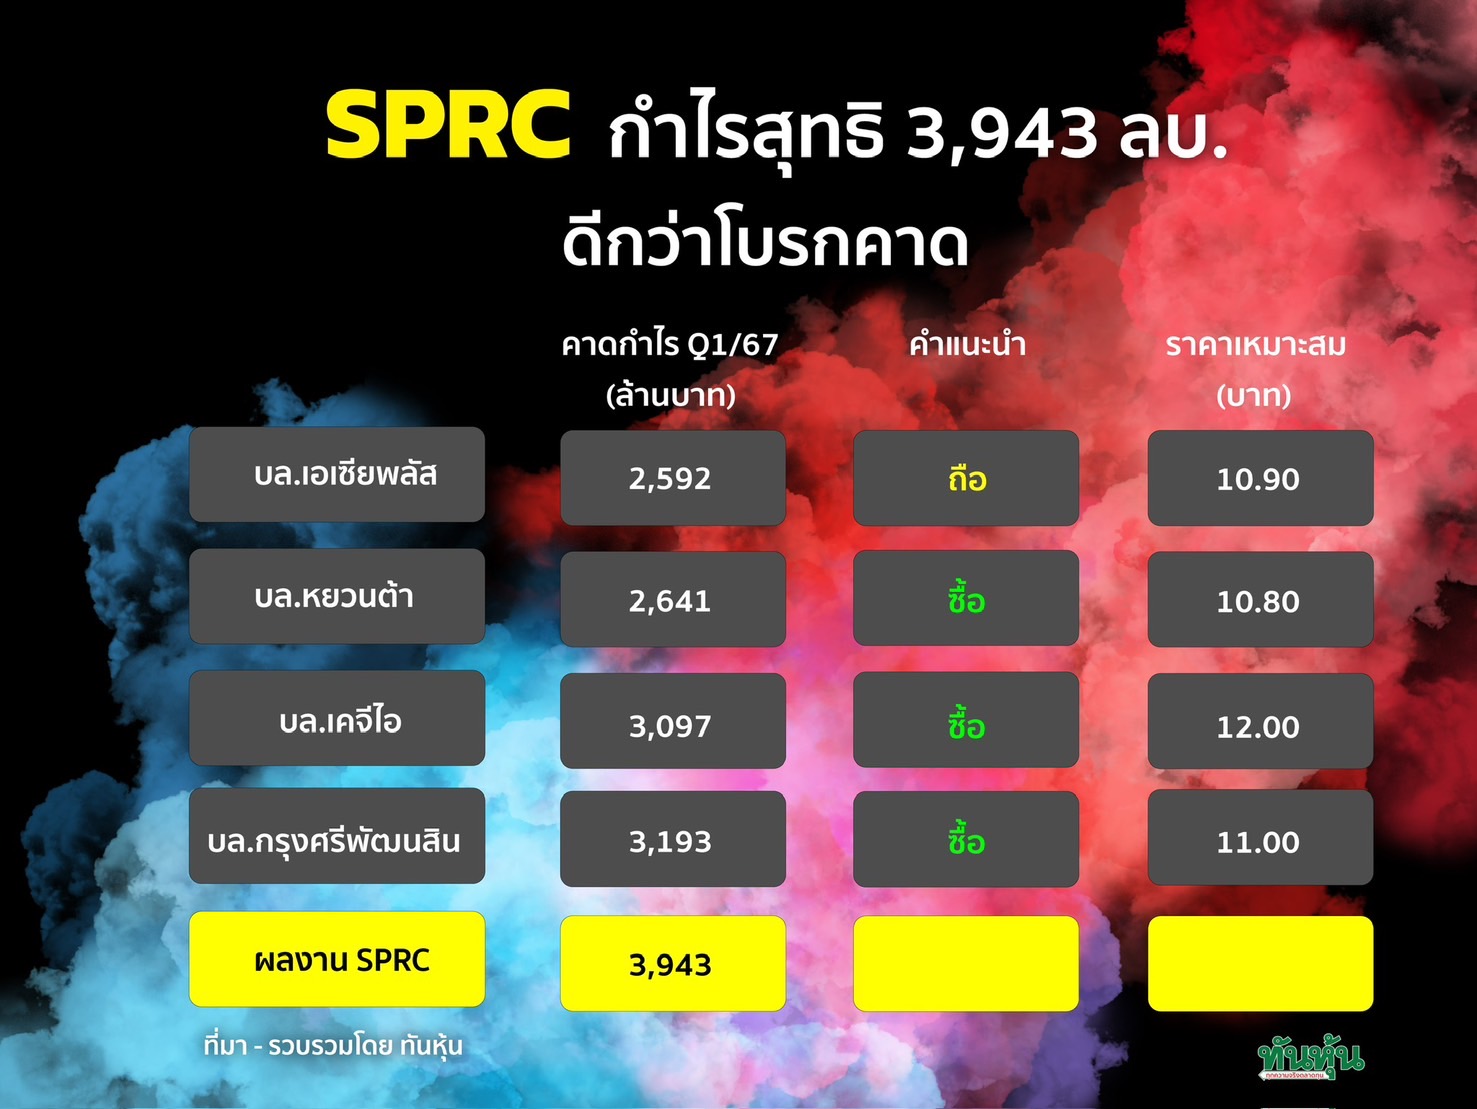 SPRC กำไรสุทธิ 3,943 ลบ. +230% ดีกว่าโบรกคาด